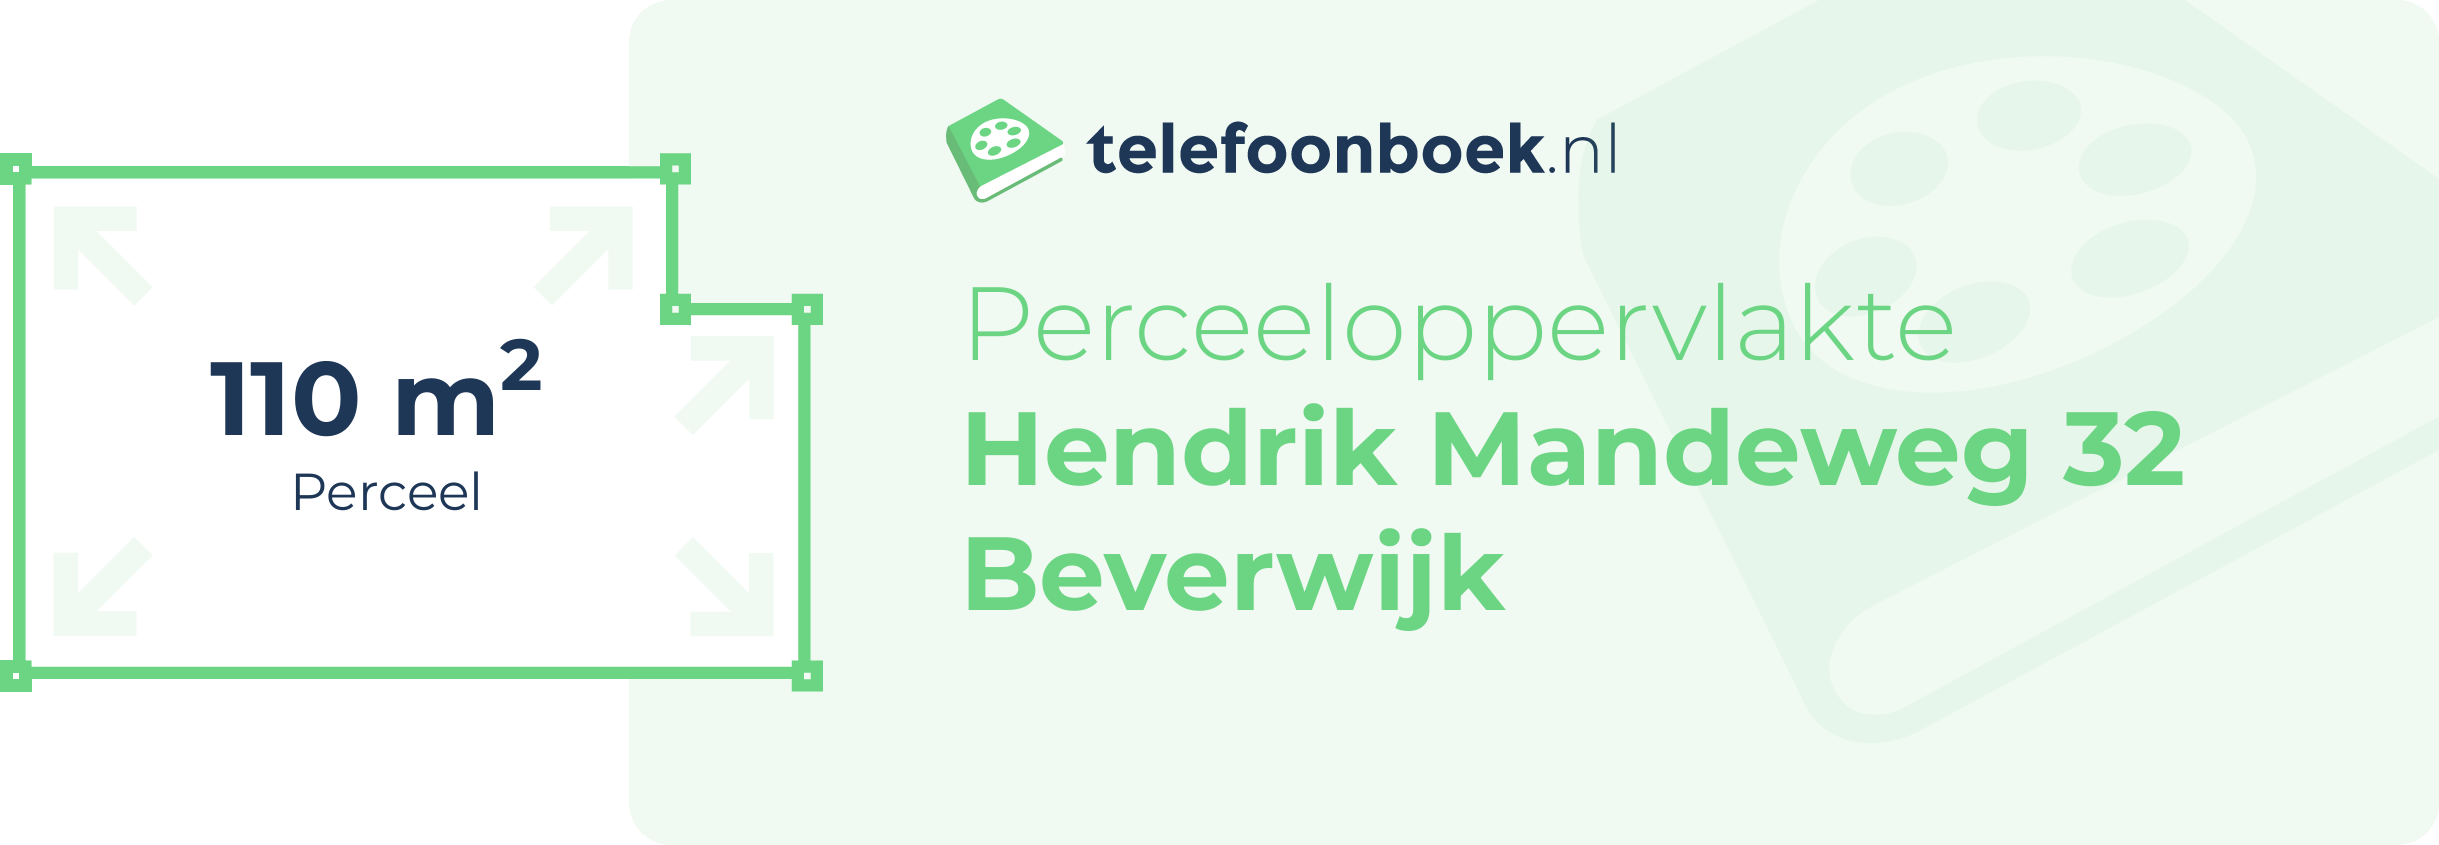 Perceeloppervlakte Hendrik Mandeweg 32 Beverwijk